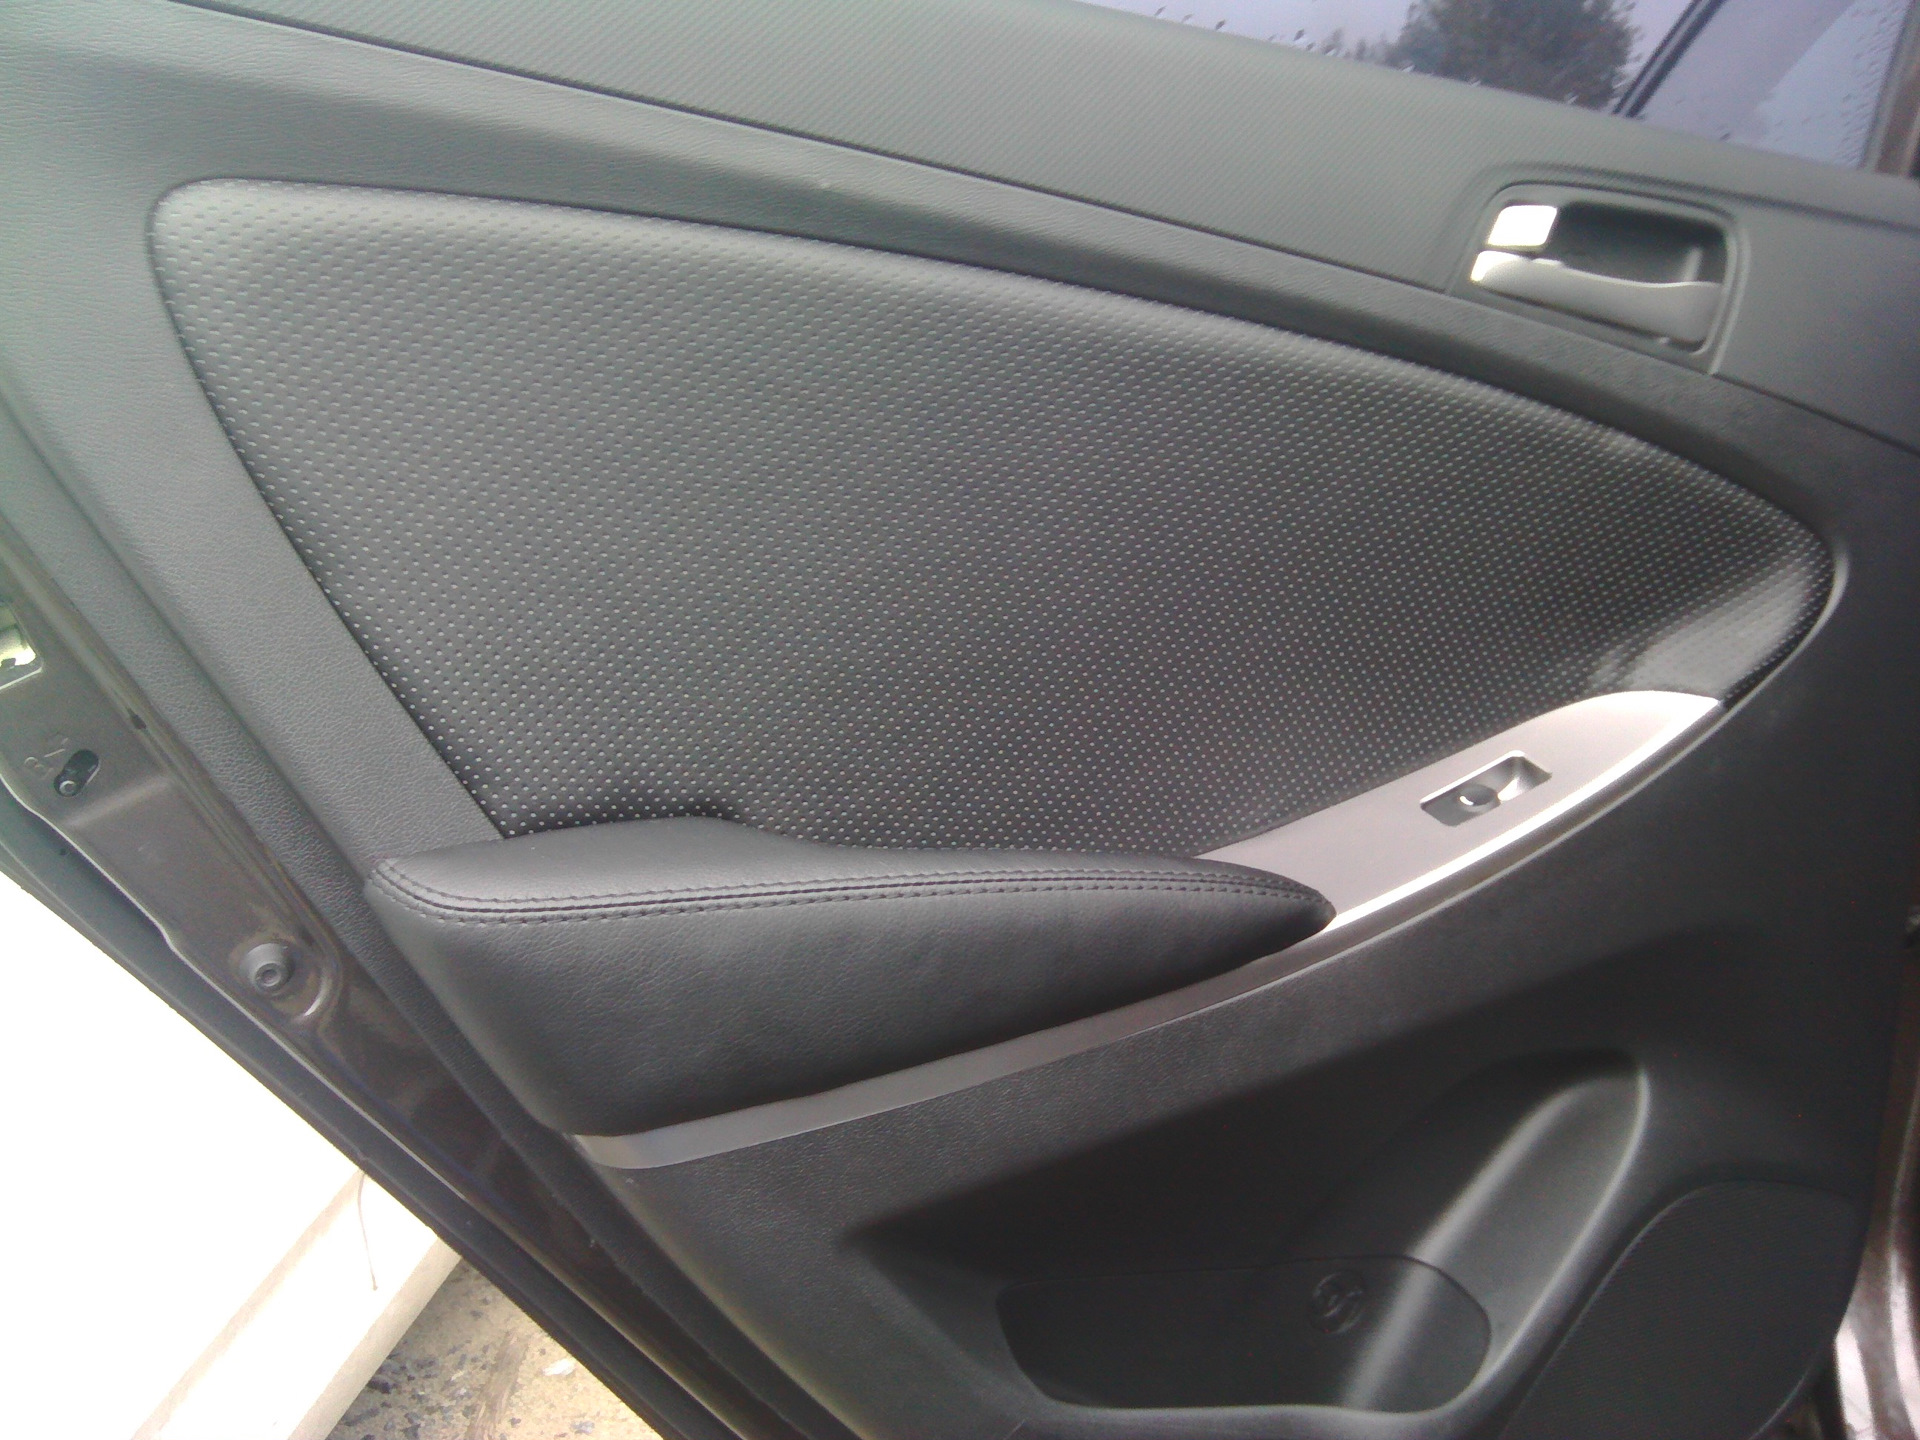 Дверь обшивка солярис хендай. Hyundai Solaris 1 высокочастотные динамики. Кожаные подлокотники дверей - Hyundai Solaris, 1.6. Обшивка двери Хендай Солярис. Колонки в дверку Солярис 2014.